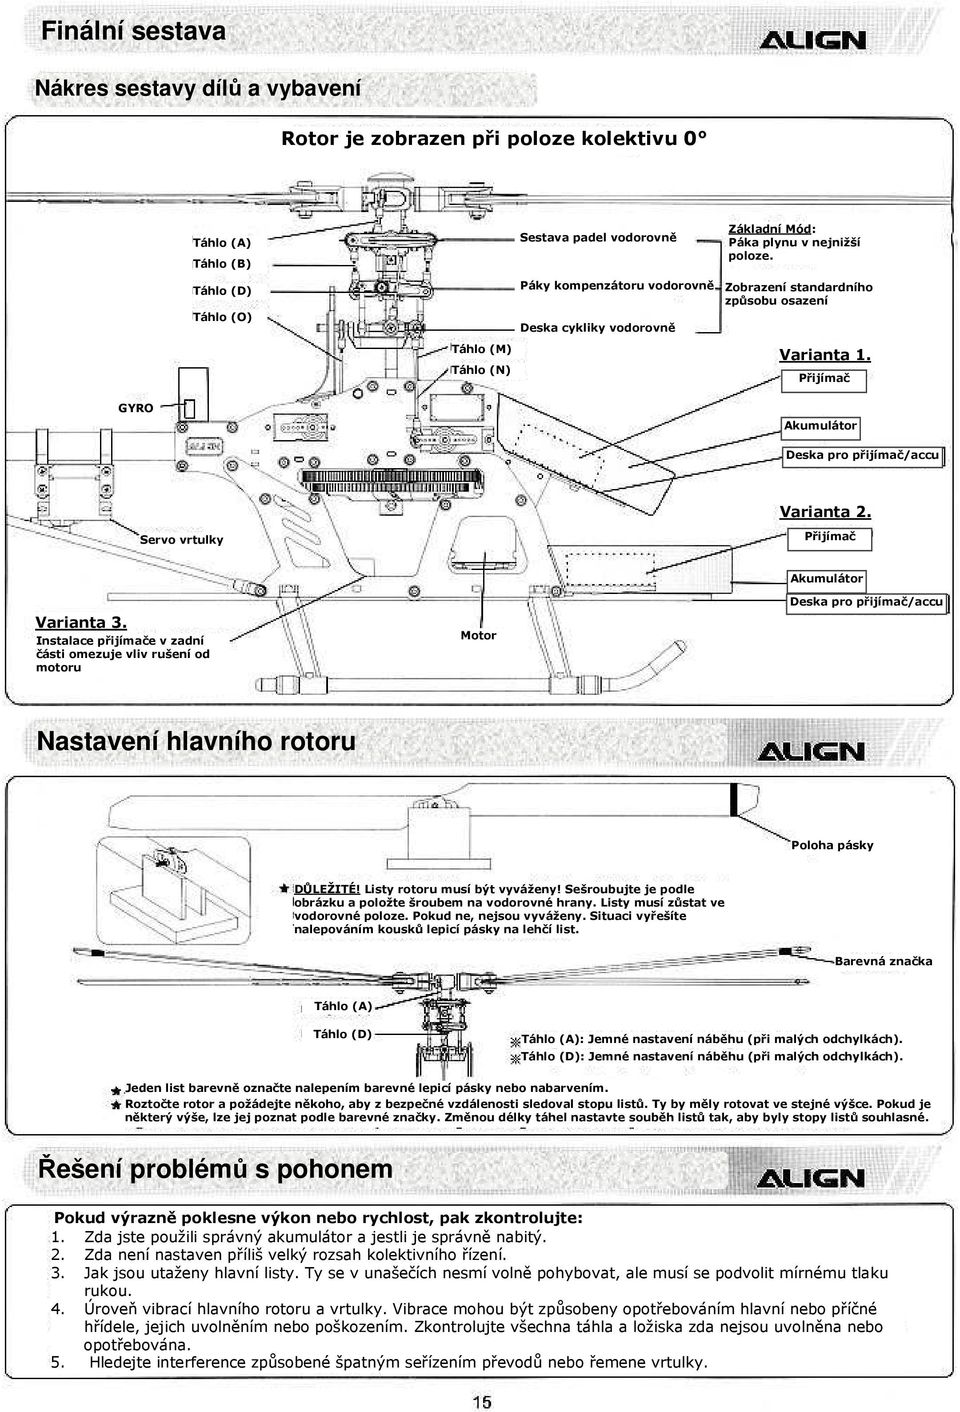 Přijímač GYRO Akumulátor Deska pro přijímač/accu Varianta 2. Servo vrtulky Přijímač Varianta 3.